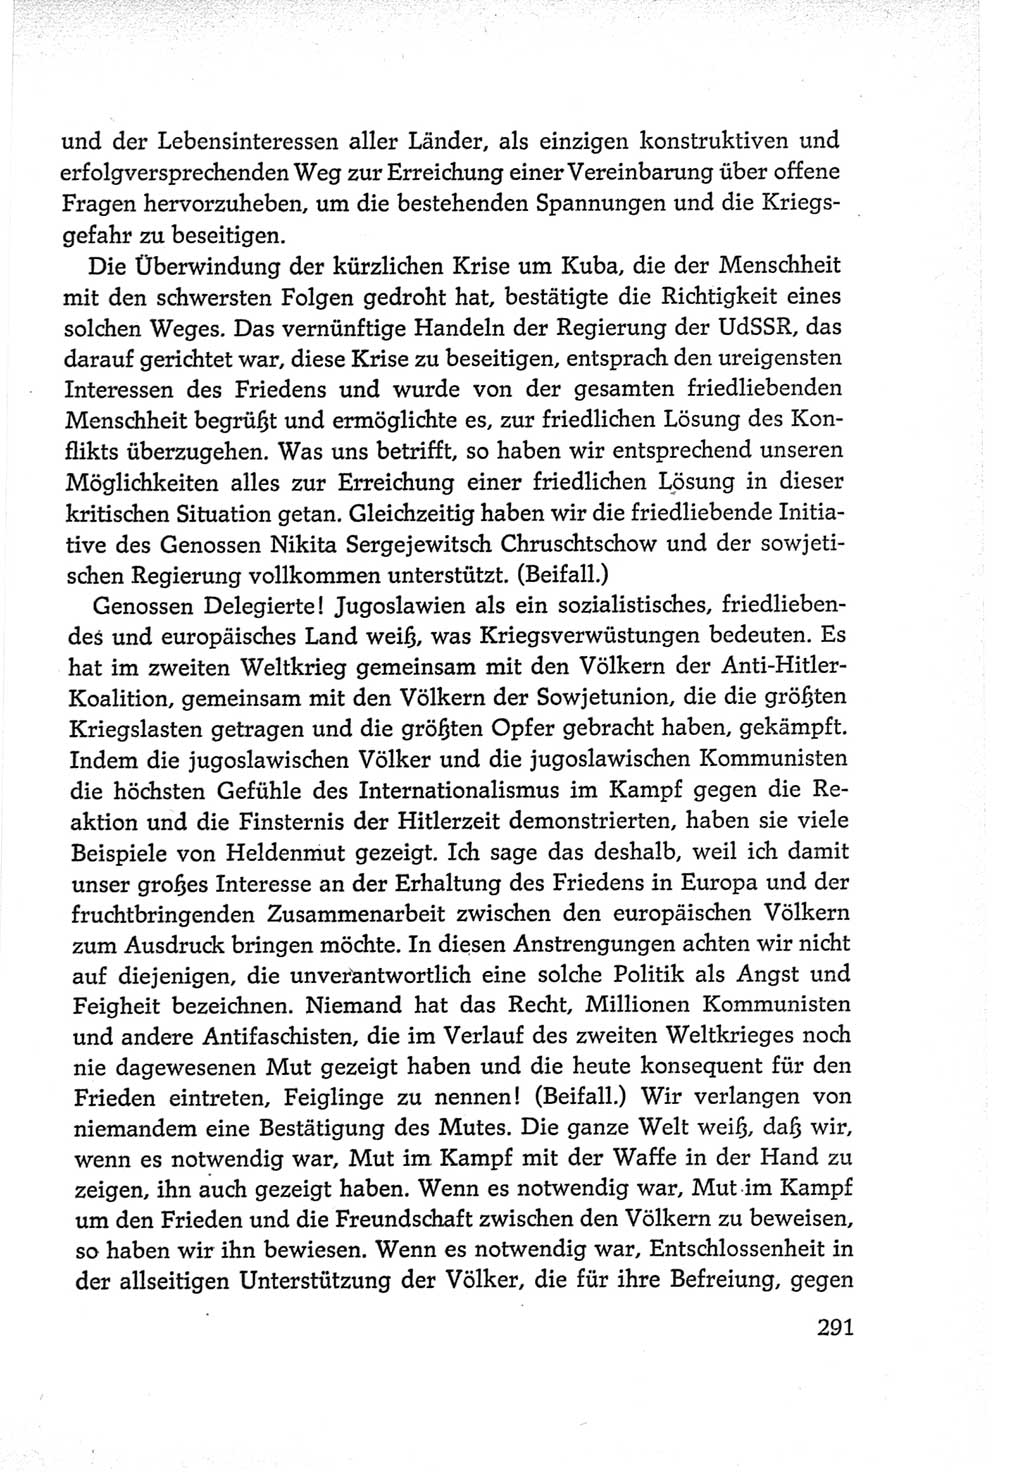 Protokoll der Verhandlungen des Ⅵ. Parteitages der Sozialistischen Einheitspartei Deutschlands (SED) [Deutsche Demokratische Republik (DDR)] 1963, Band Ⅱ, Seite 291 (Prot. Verh. Ⅵ. PT SED DDR 1963, Bd. Ⅱ, S. 291)